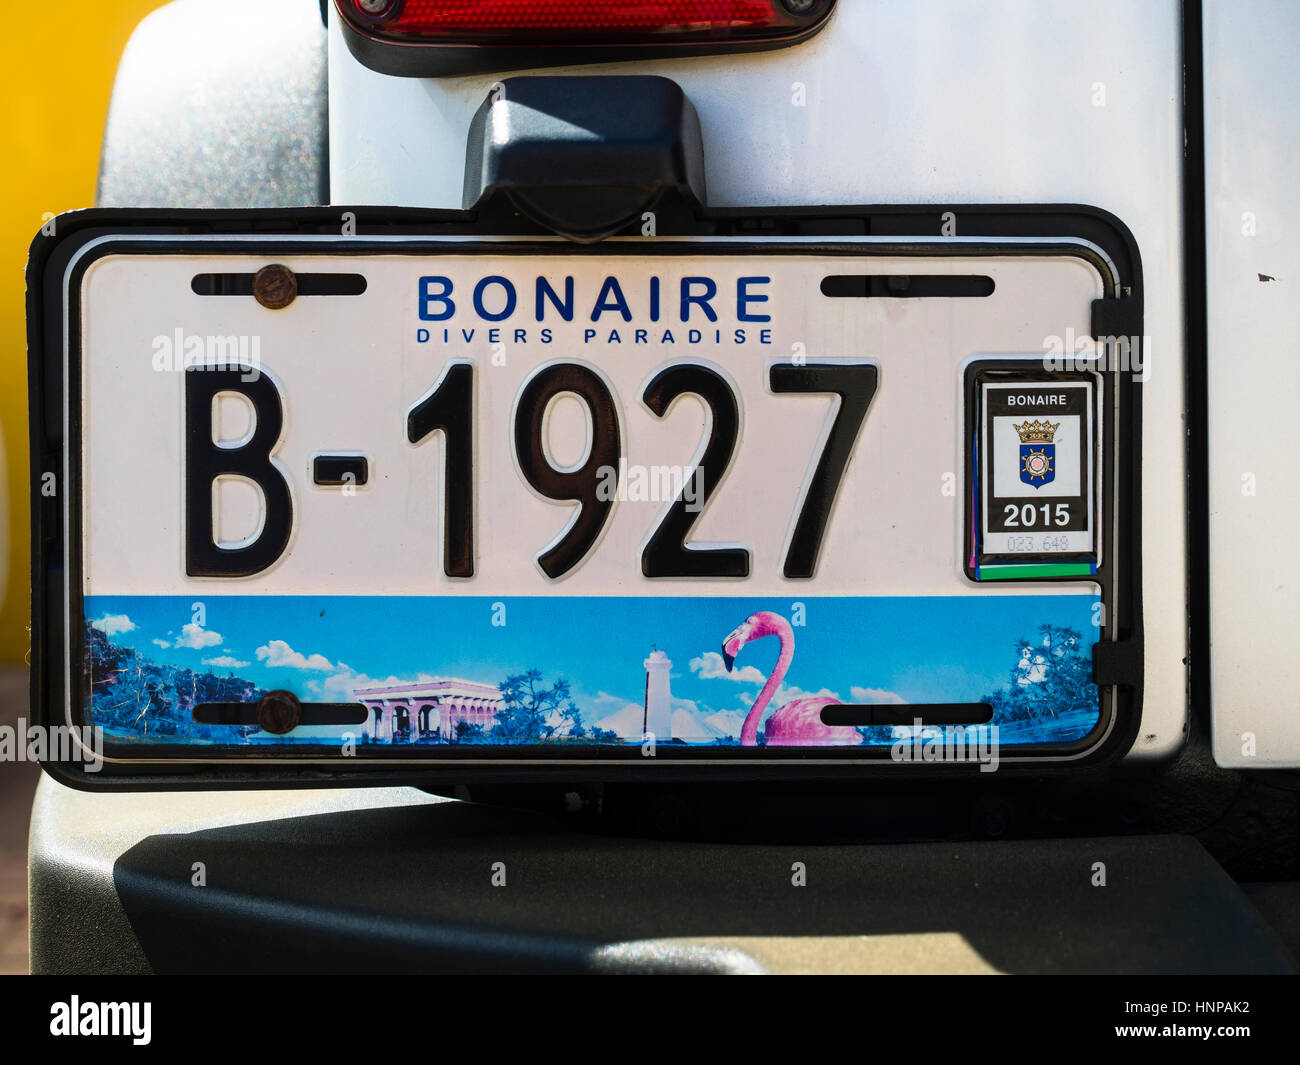 Numéro de la plaque d'une voiture, l'île de Bonaire, Kralendijk, Bonaire, Antilles néerlandaises Banque D'Images